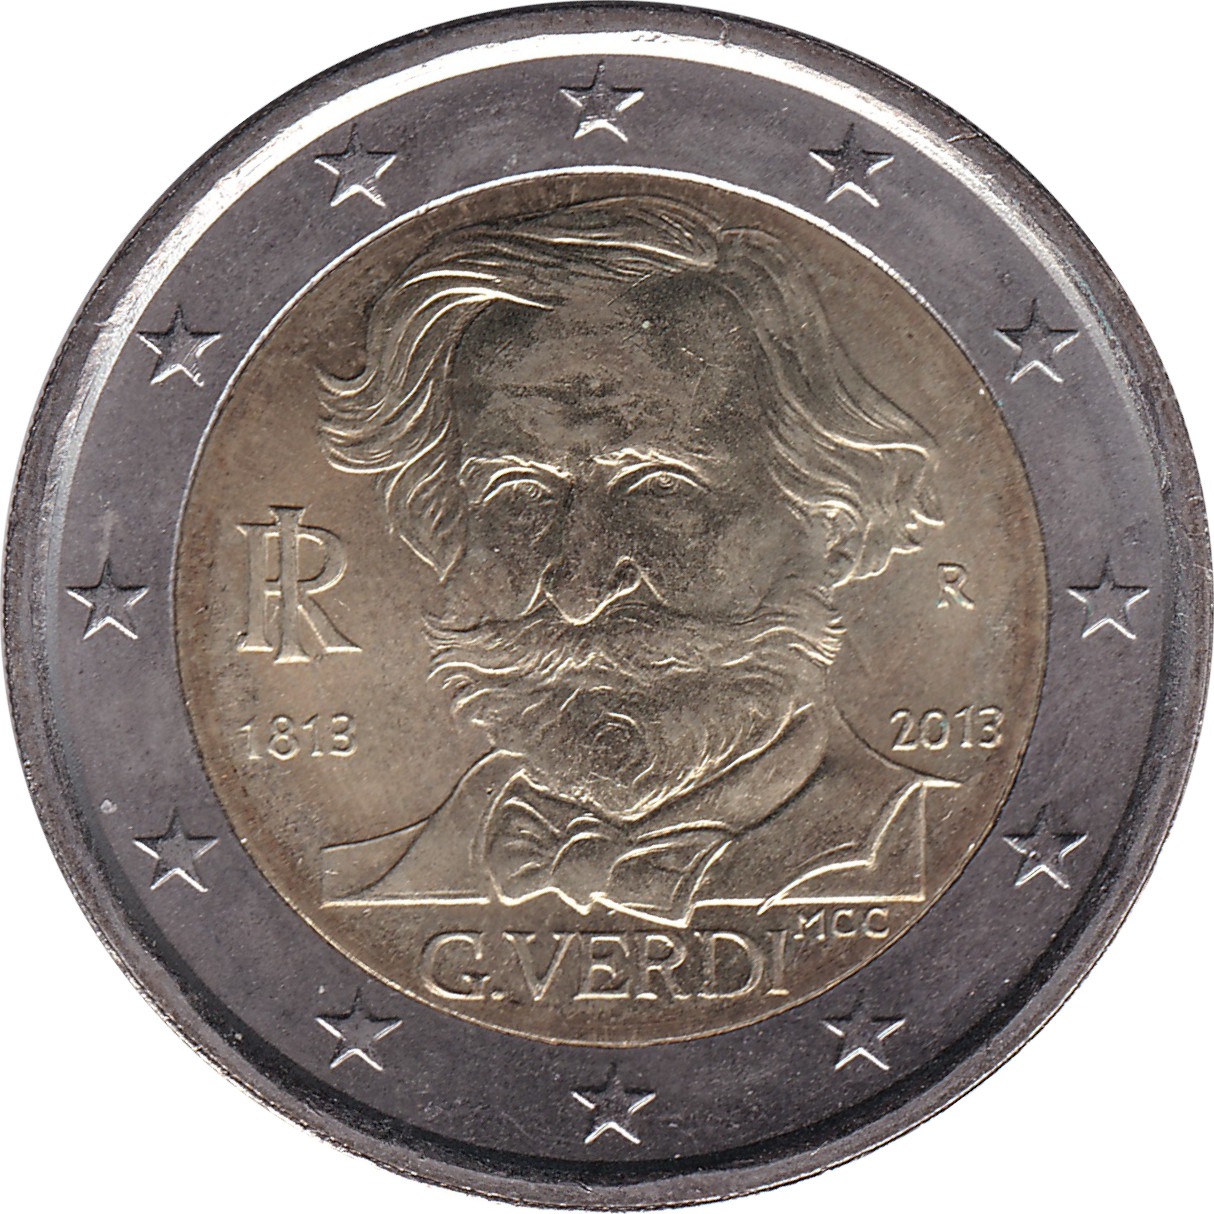 2 euro - Giuseppe Verdi